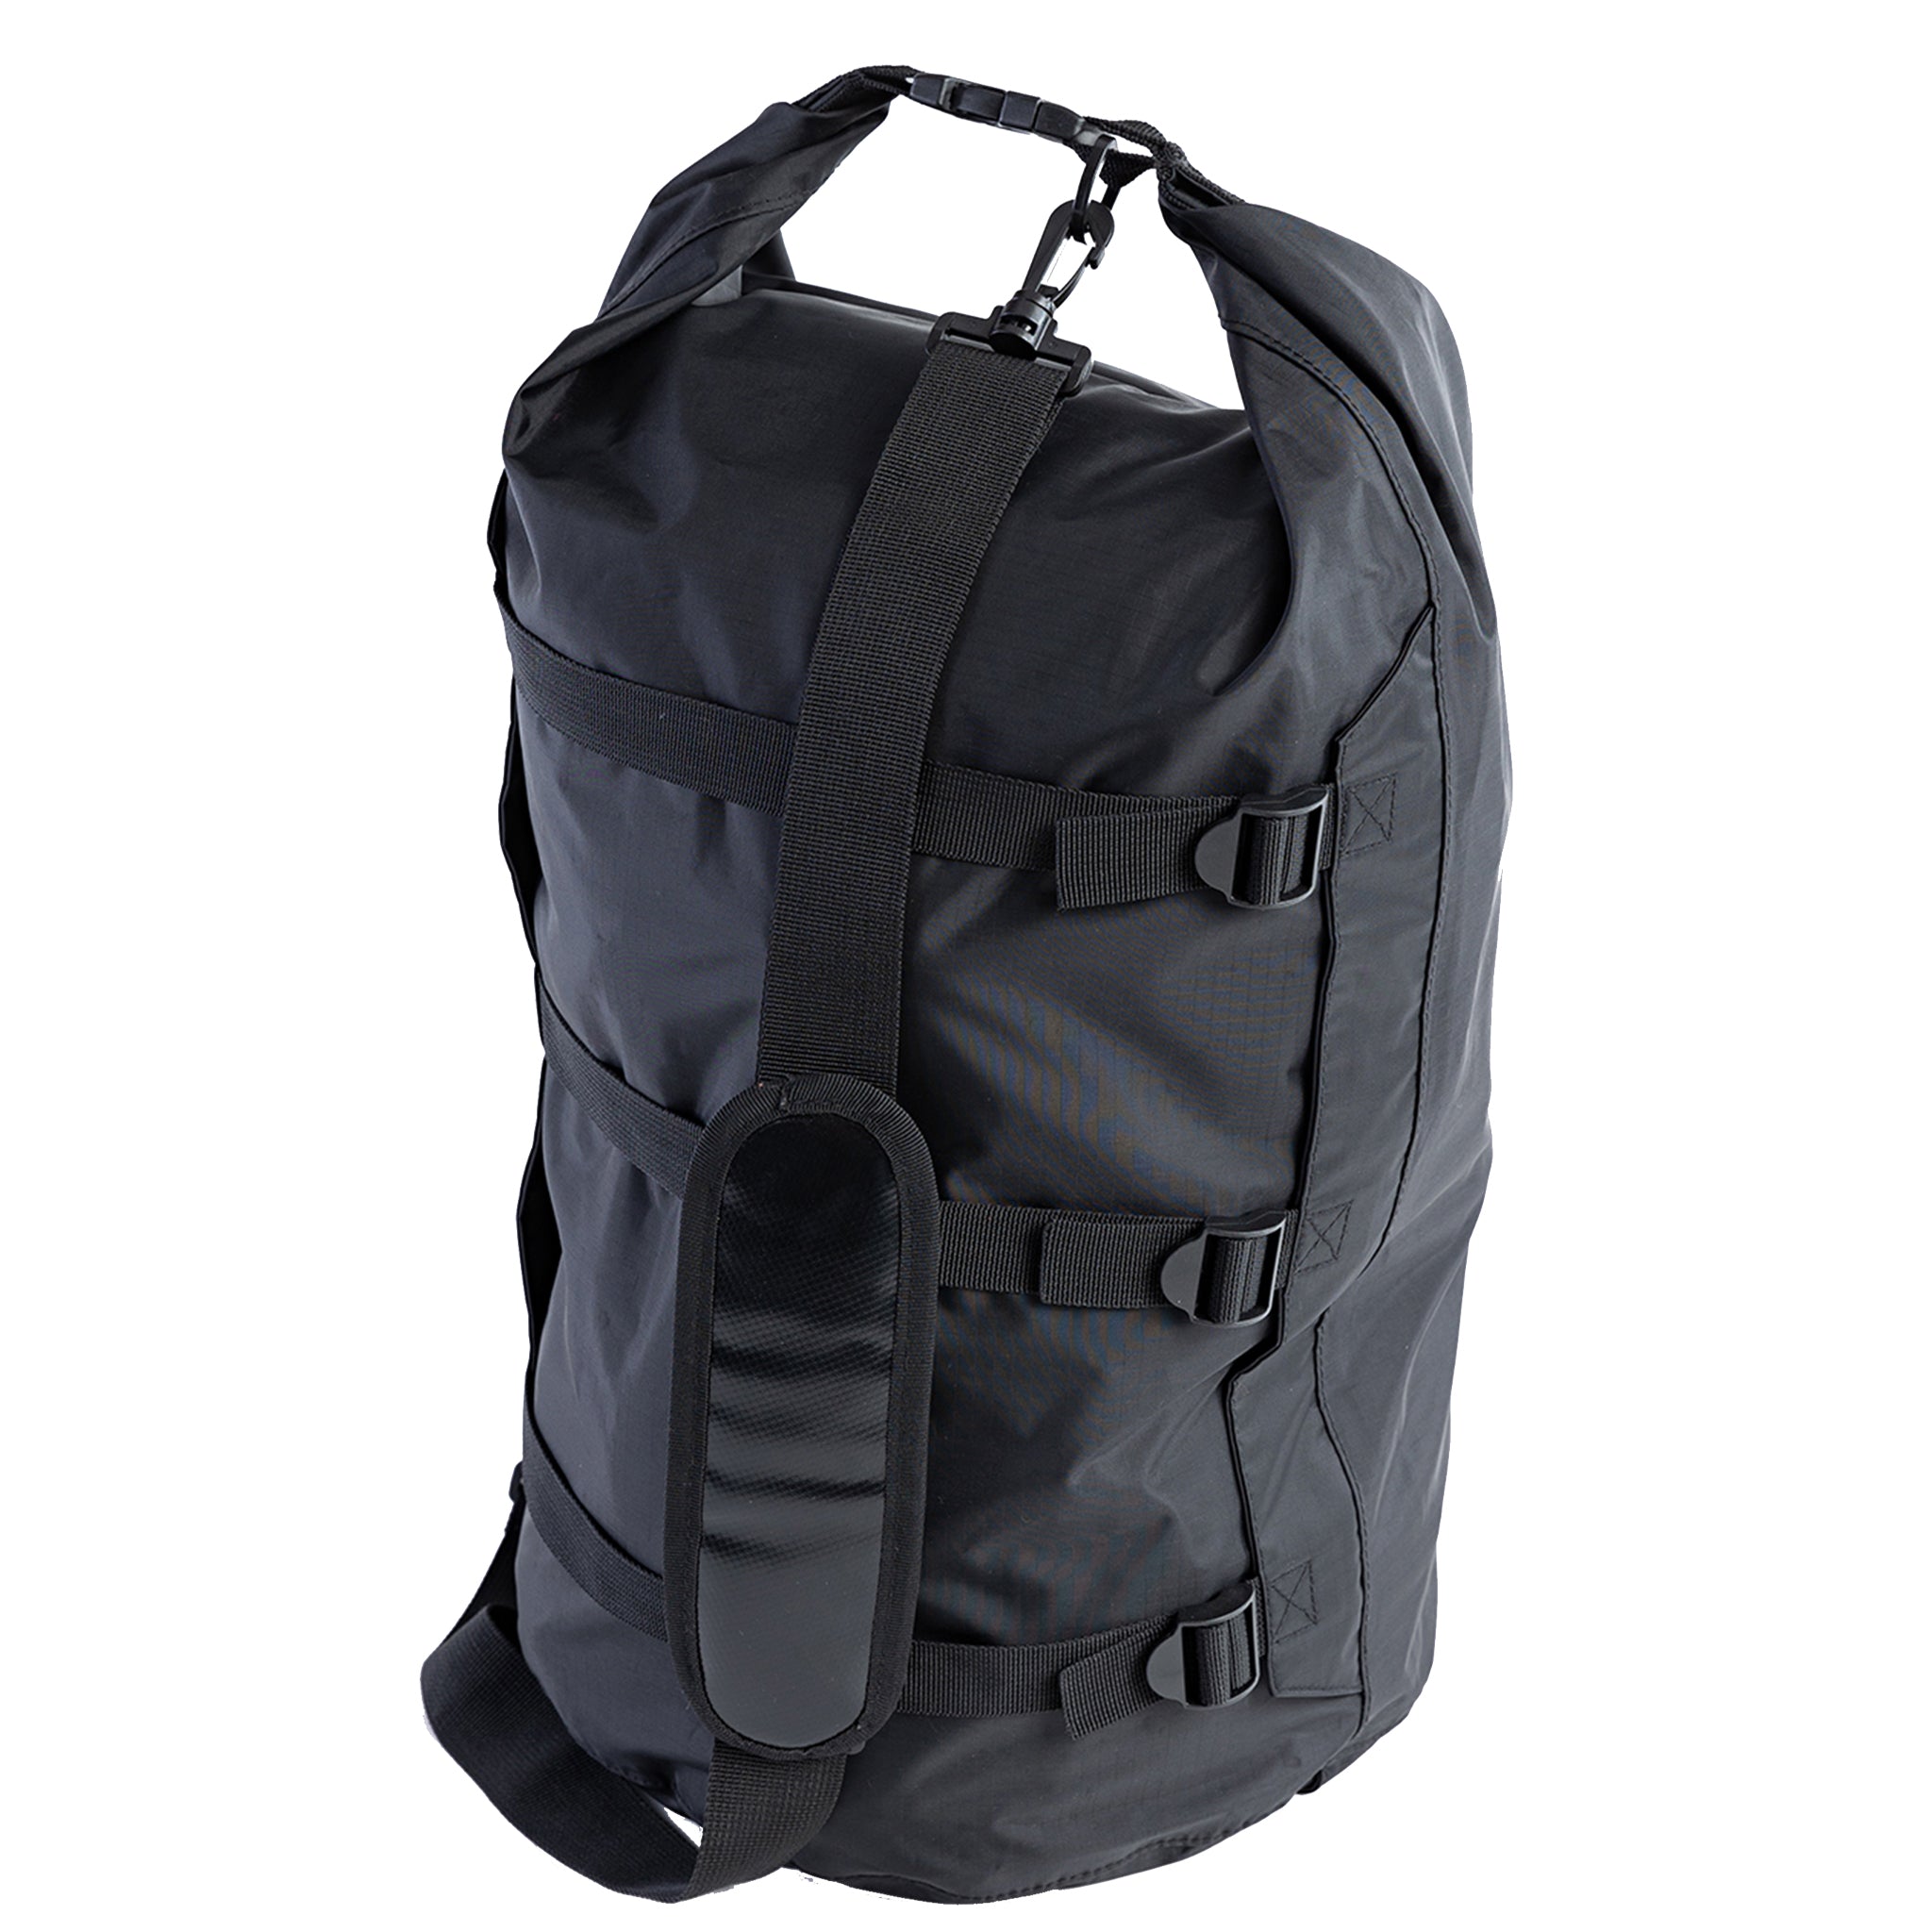 dryrobe Compression Travel Bag | Showing Straps